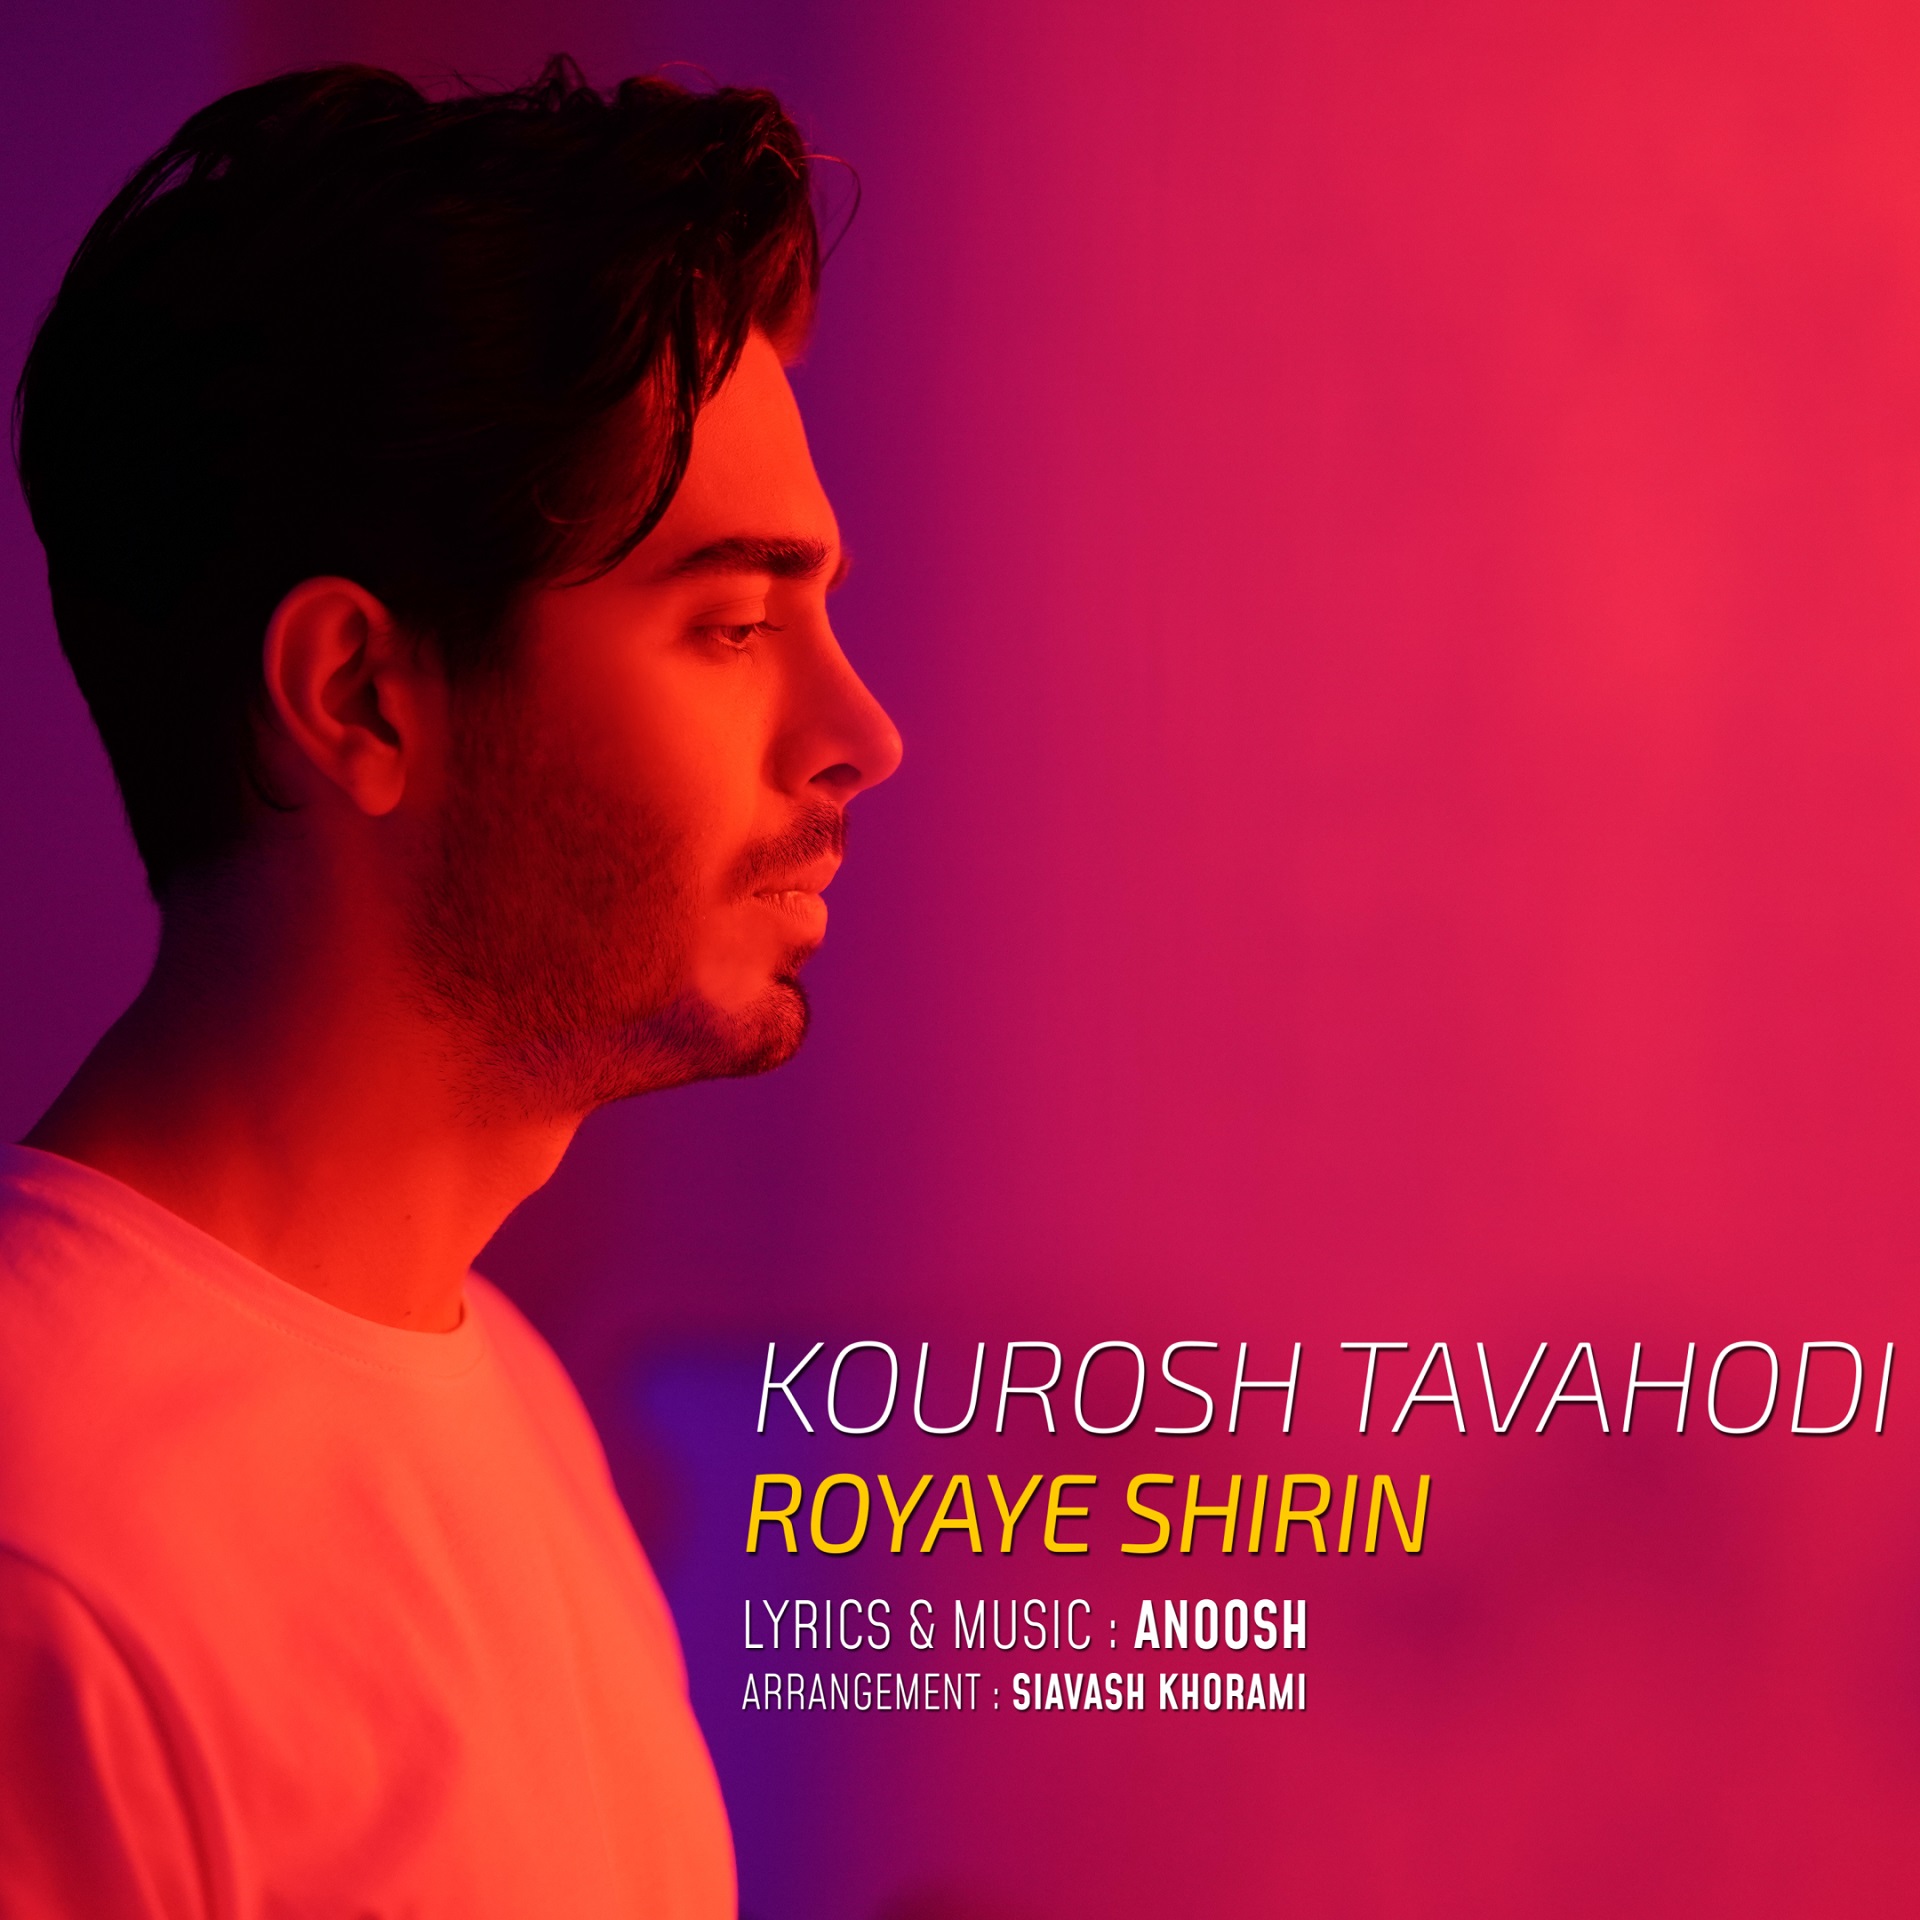  دانلود آهنگ جدید کوروش توحدی - رویای شیرین | Download New Music By Kourosh Tavahodi - Royaye Shirin